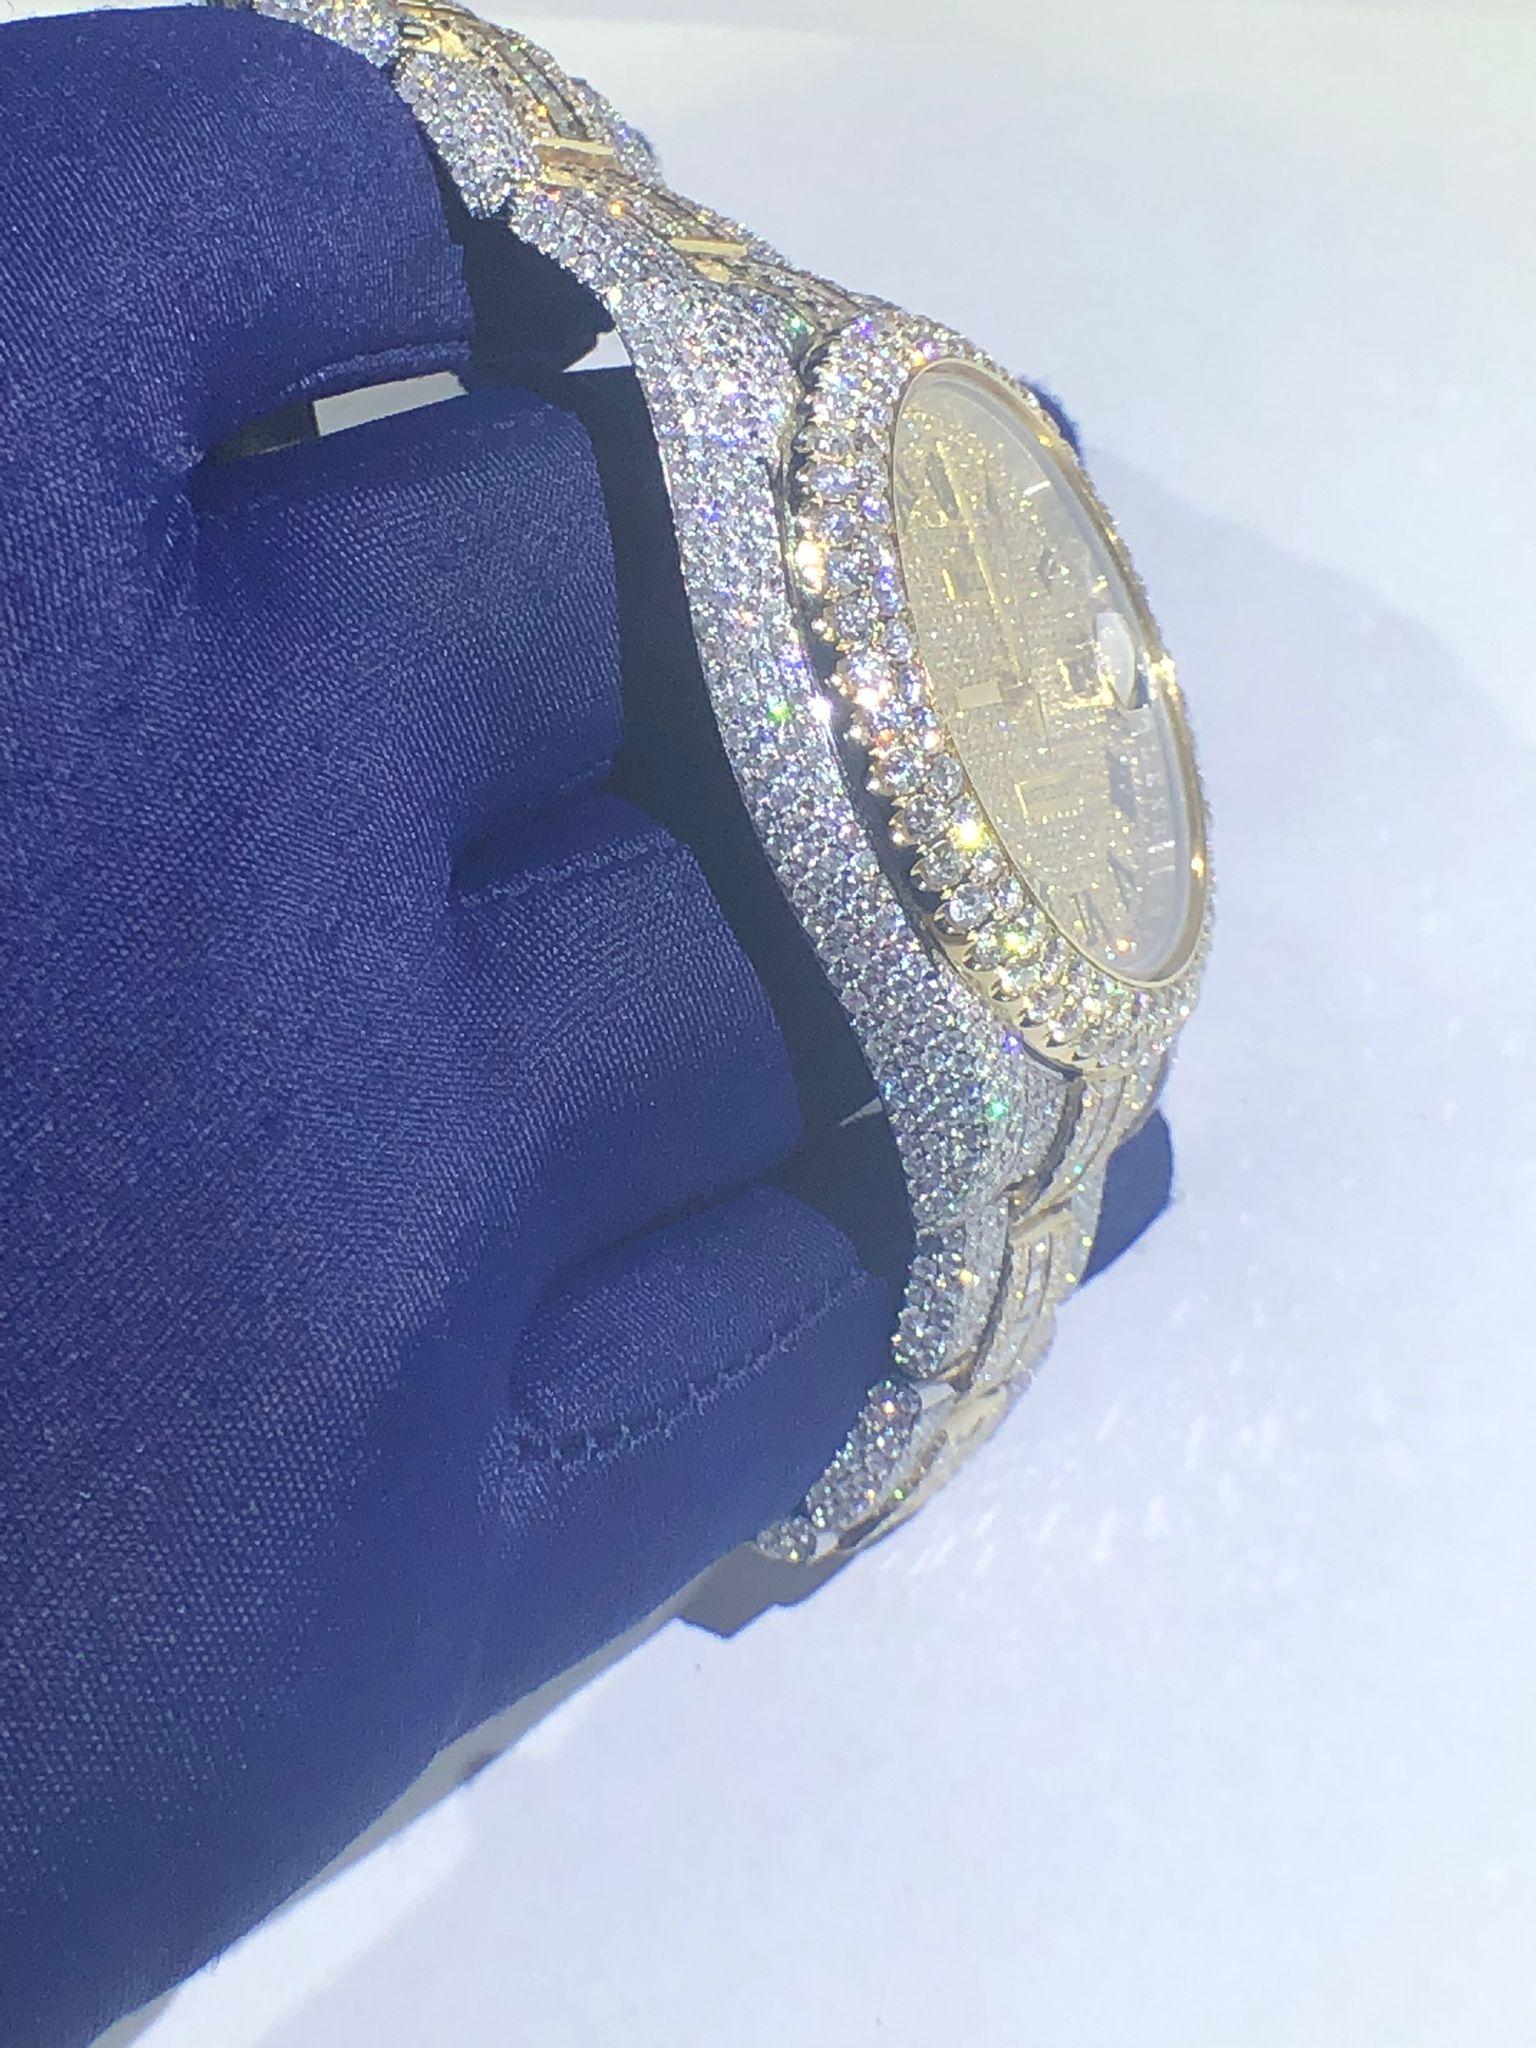  Authentique Rolex datejust 41mm entièrement glacé avec des diamants ronds et émeraudes de qualité vs blanc naturel.

26 carats de diamants de qualité 